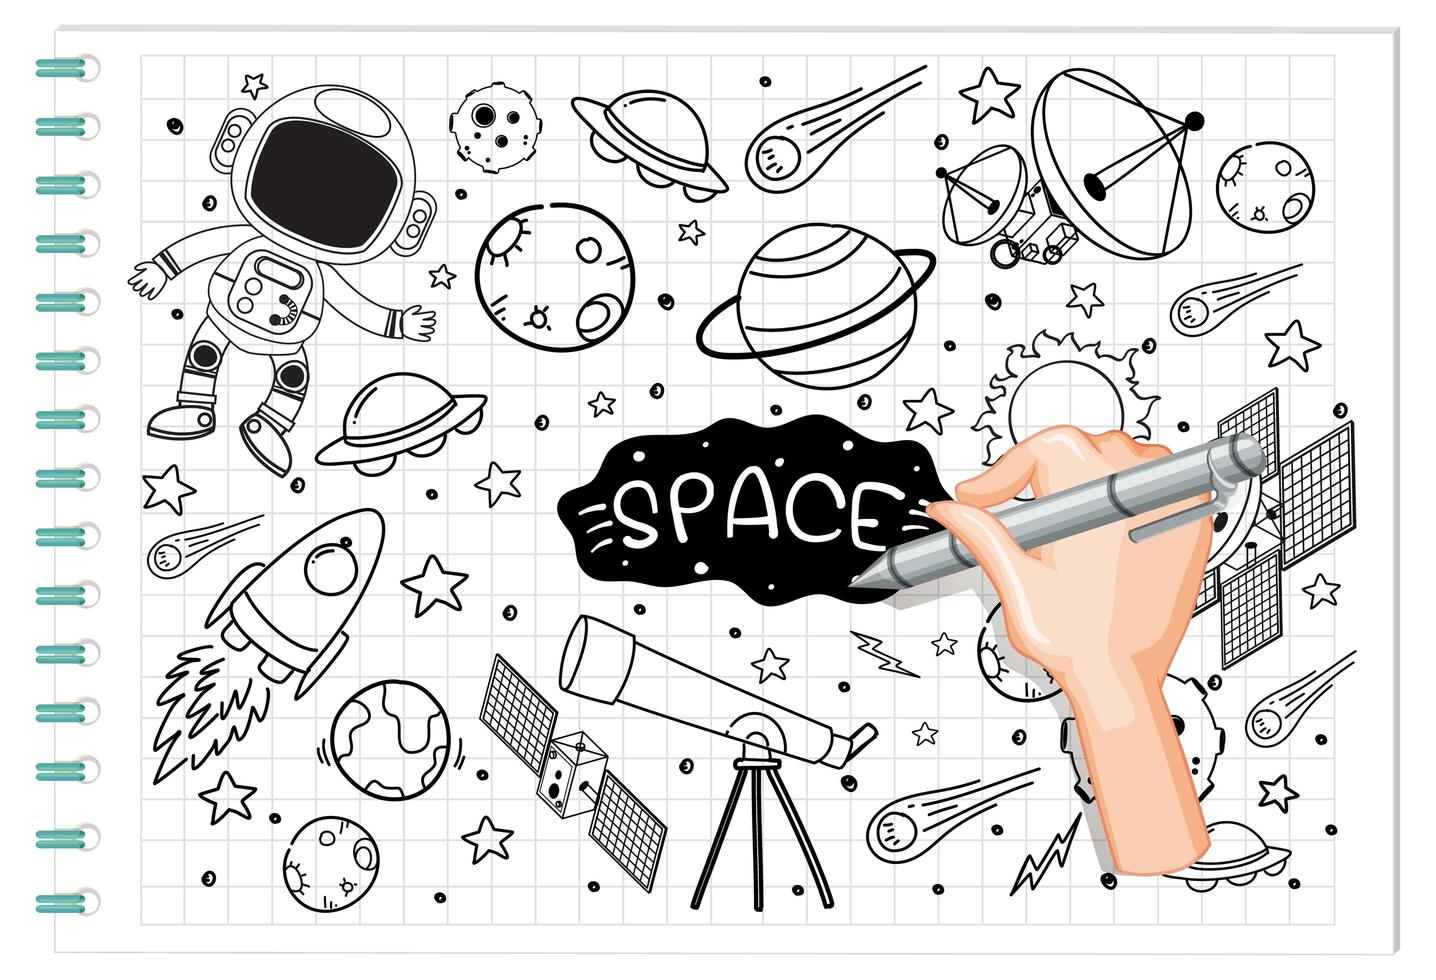 elemento di spazio di disegno a mano in stile doodle o schizzo su carta vettore